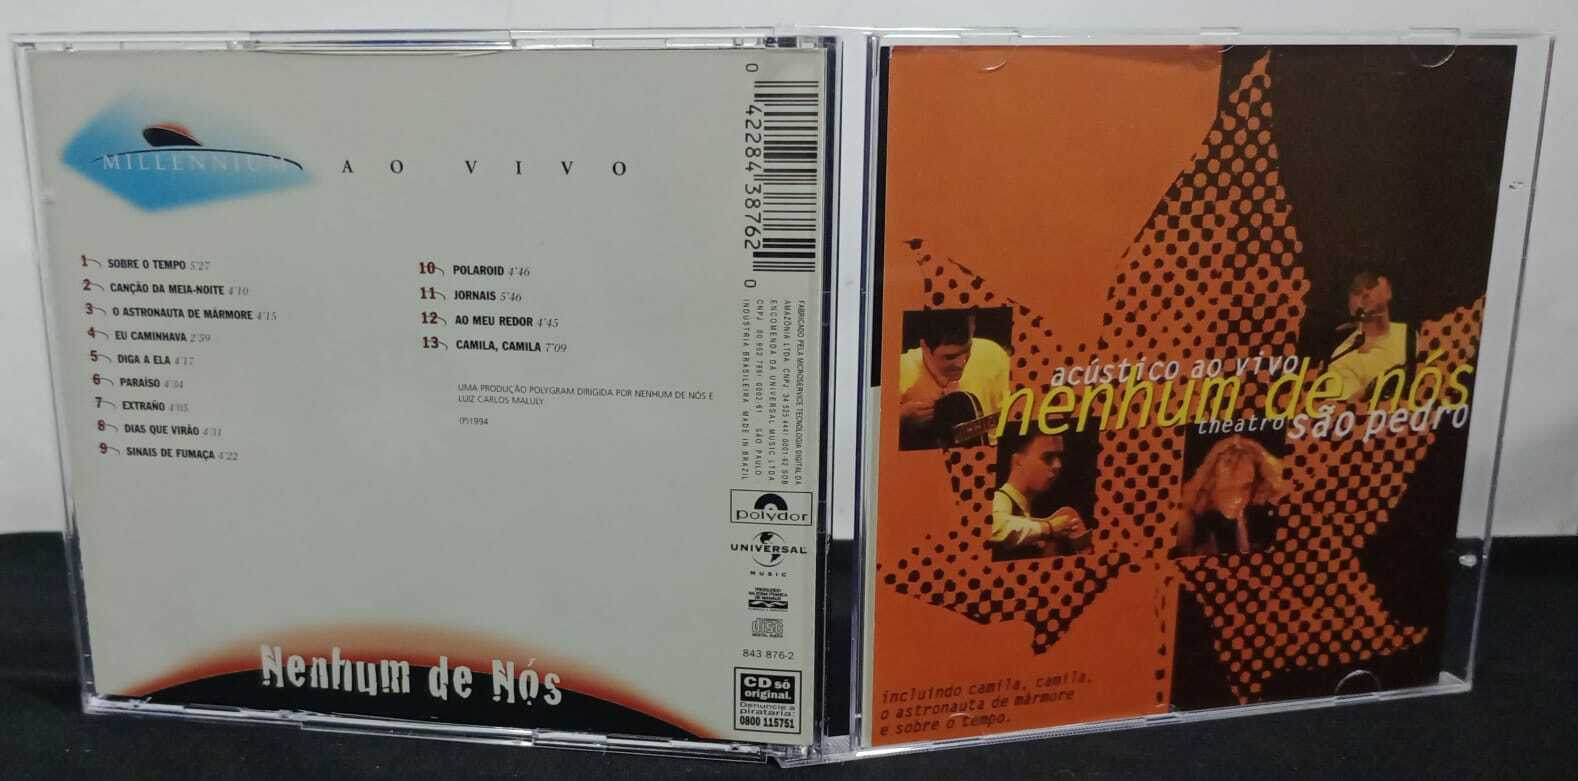 CD - Nenhum De Nos - Acústico Ao Vivo - Theatro São Pedro